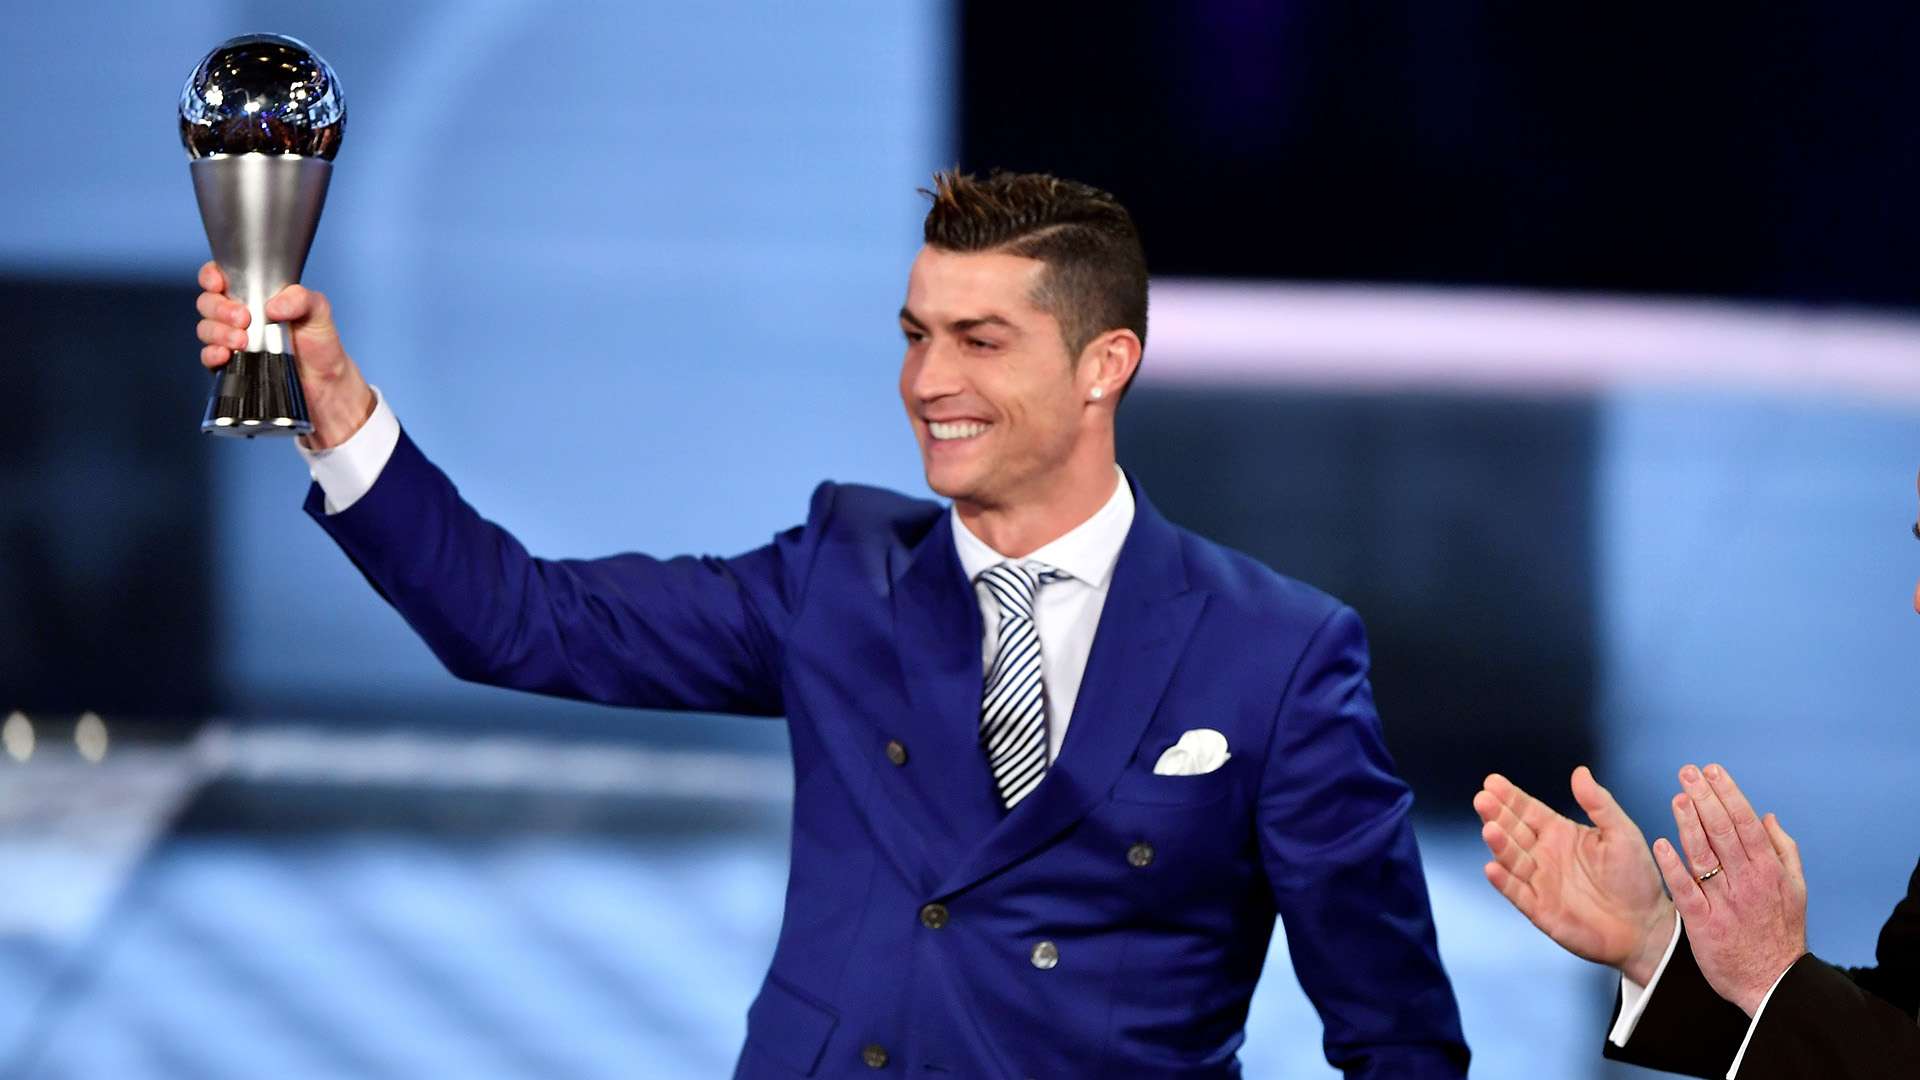 Cristiano Ronaldo 2017 FIFA The Best Awards 09012017